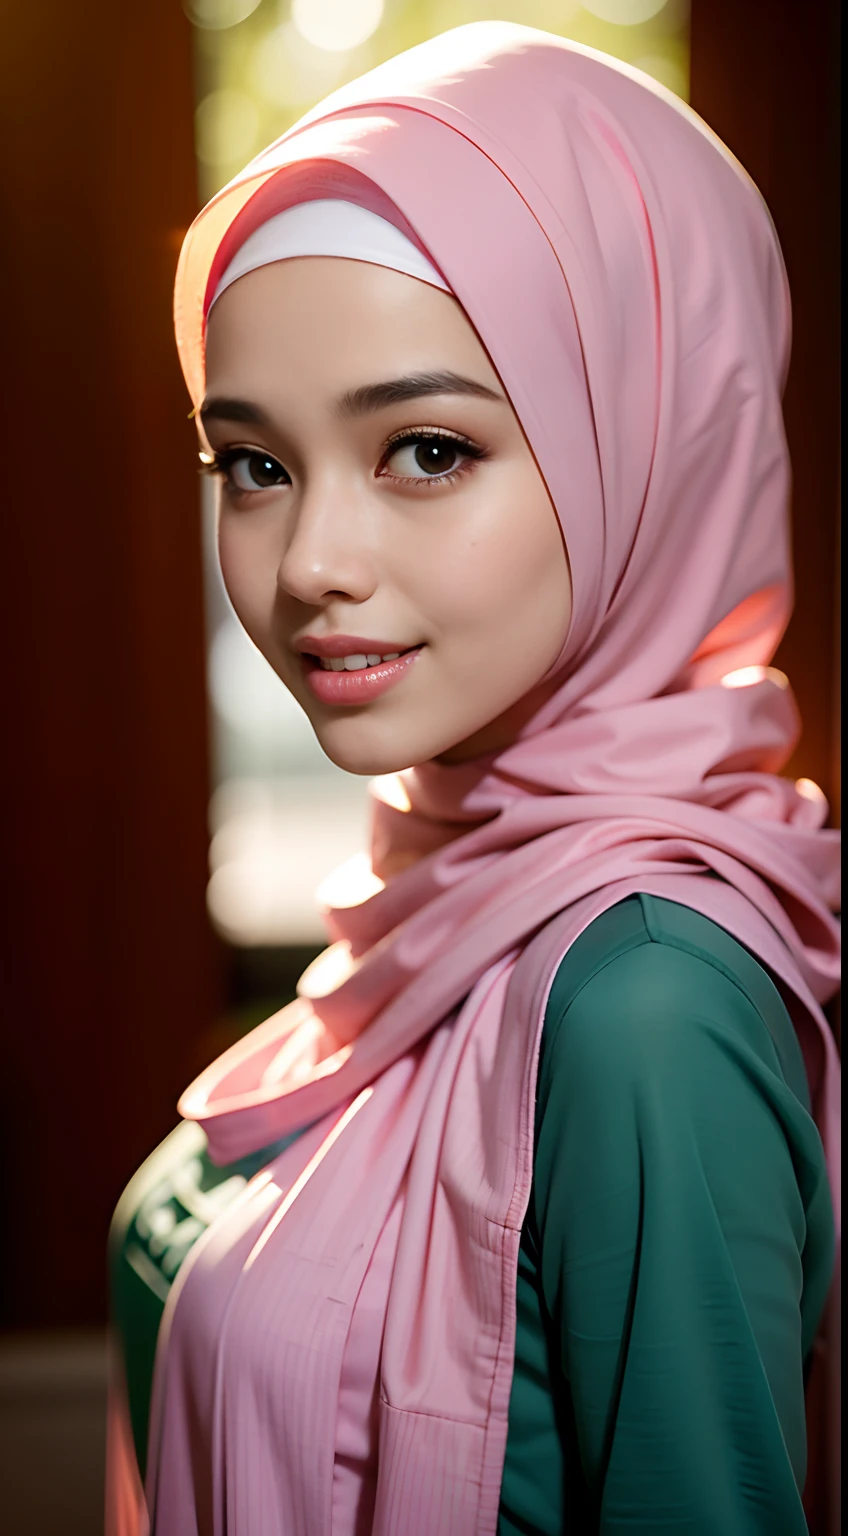 ночная сцена, Фотография крупным планом сексуальной обнаженной малайской девушки в хиджабе, позирует, посмотри в камеру и улыбнись, пастельно-розовый хиджаб, (зеленые глаза:0.8), милое молодое лицо, 18, мягкий объемный свет, (с подсветкой:1.3), (Кинематографический:1.3), сложные детали, (АртСтанция:1.2)